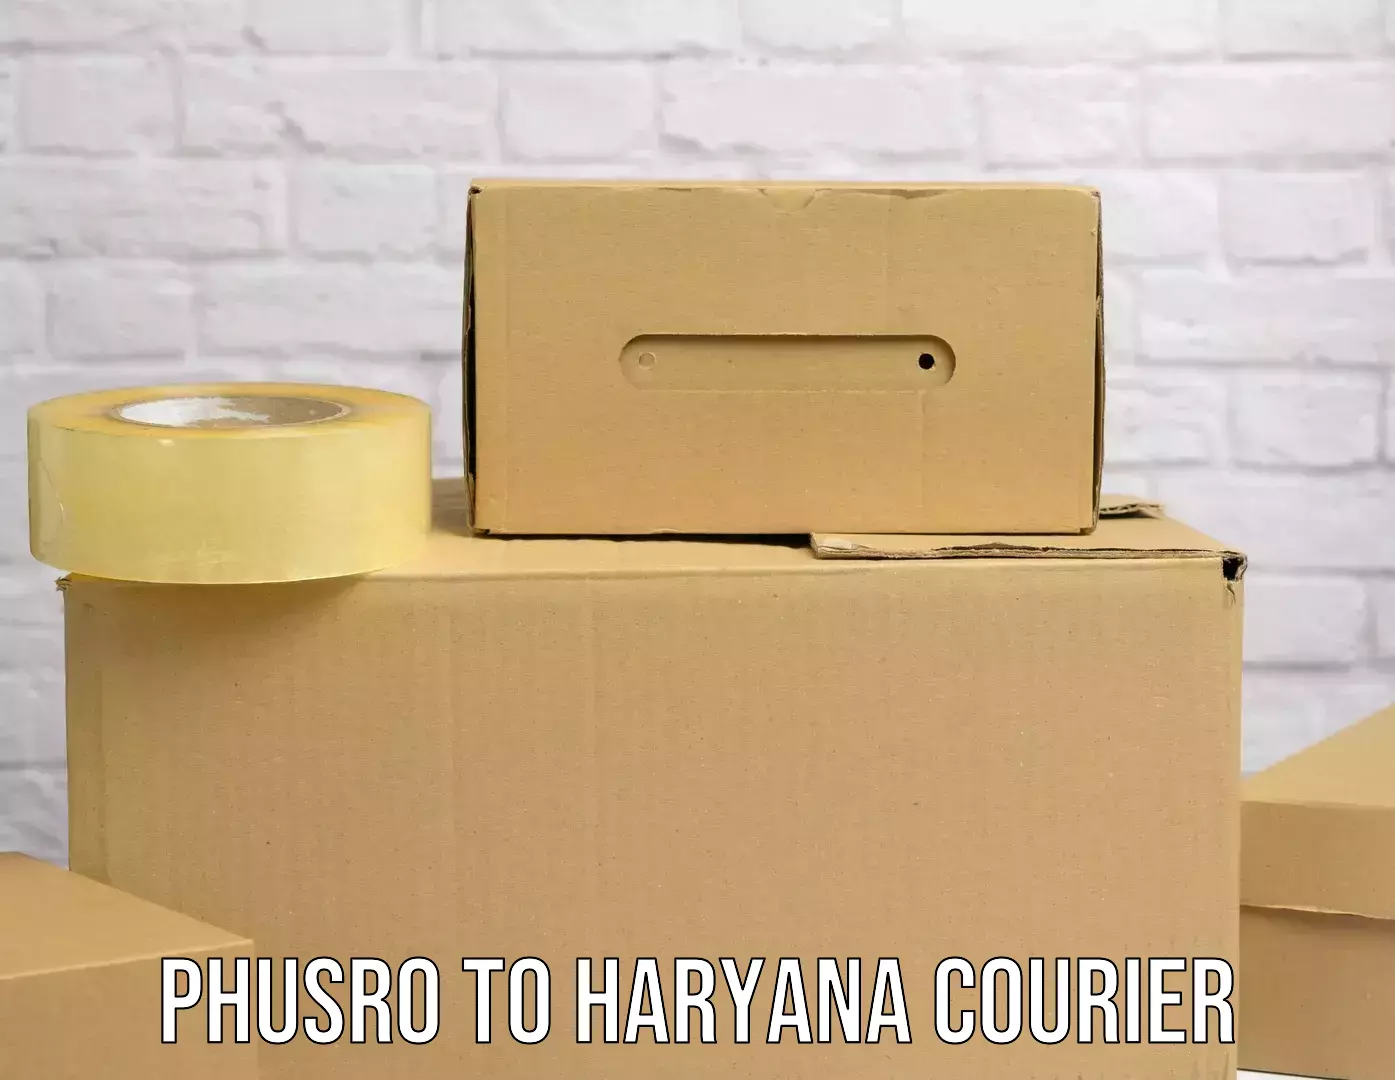 Nationwide shipping capabilities in Phusro to Pehowa